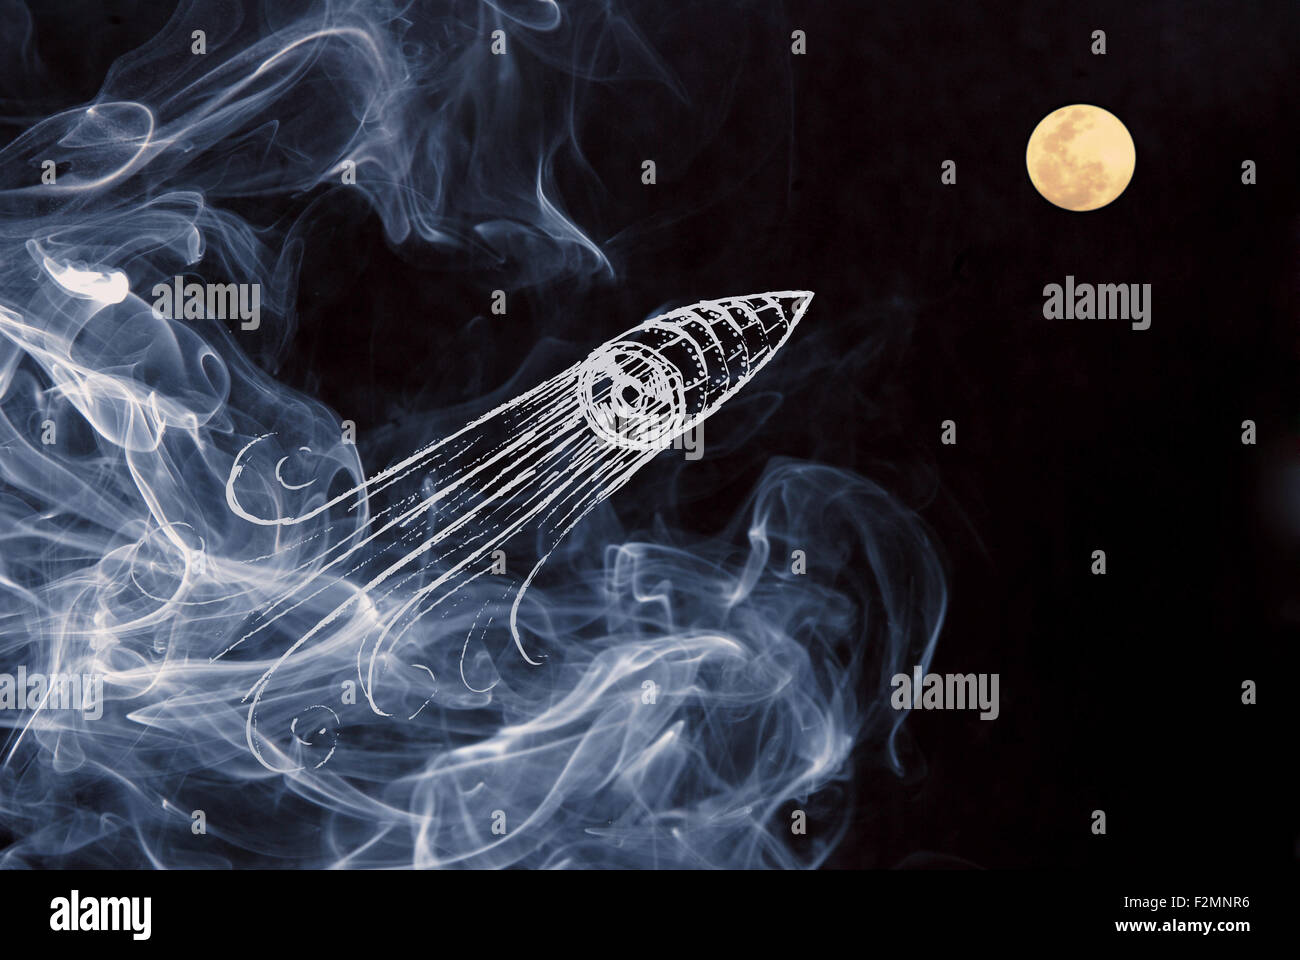 Essere creativi sul tuo avvio progetto composizione con disegnati a mano la nave spaziale Lancio over night Moon sky con sfondo di fumo. Foto Stock